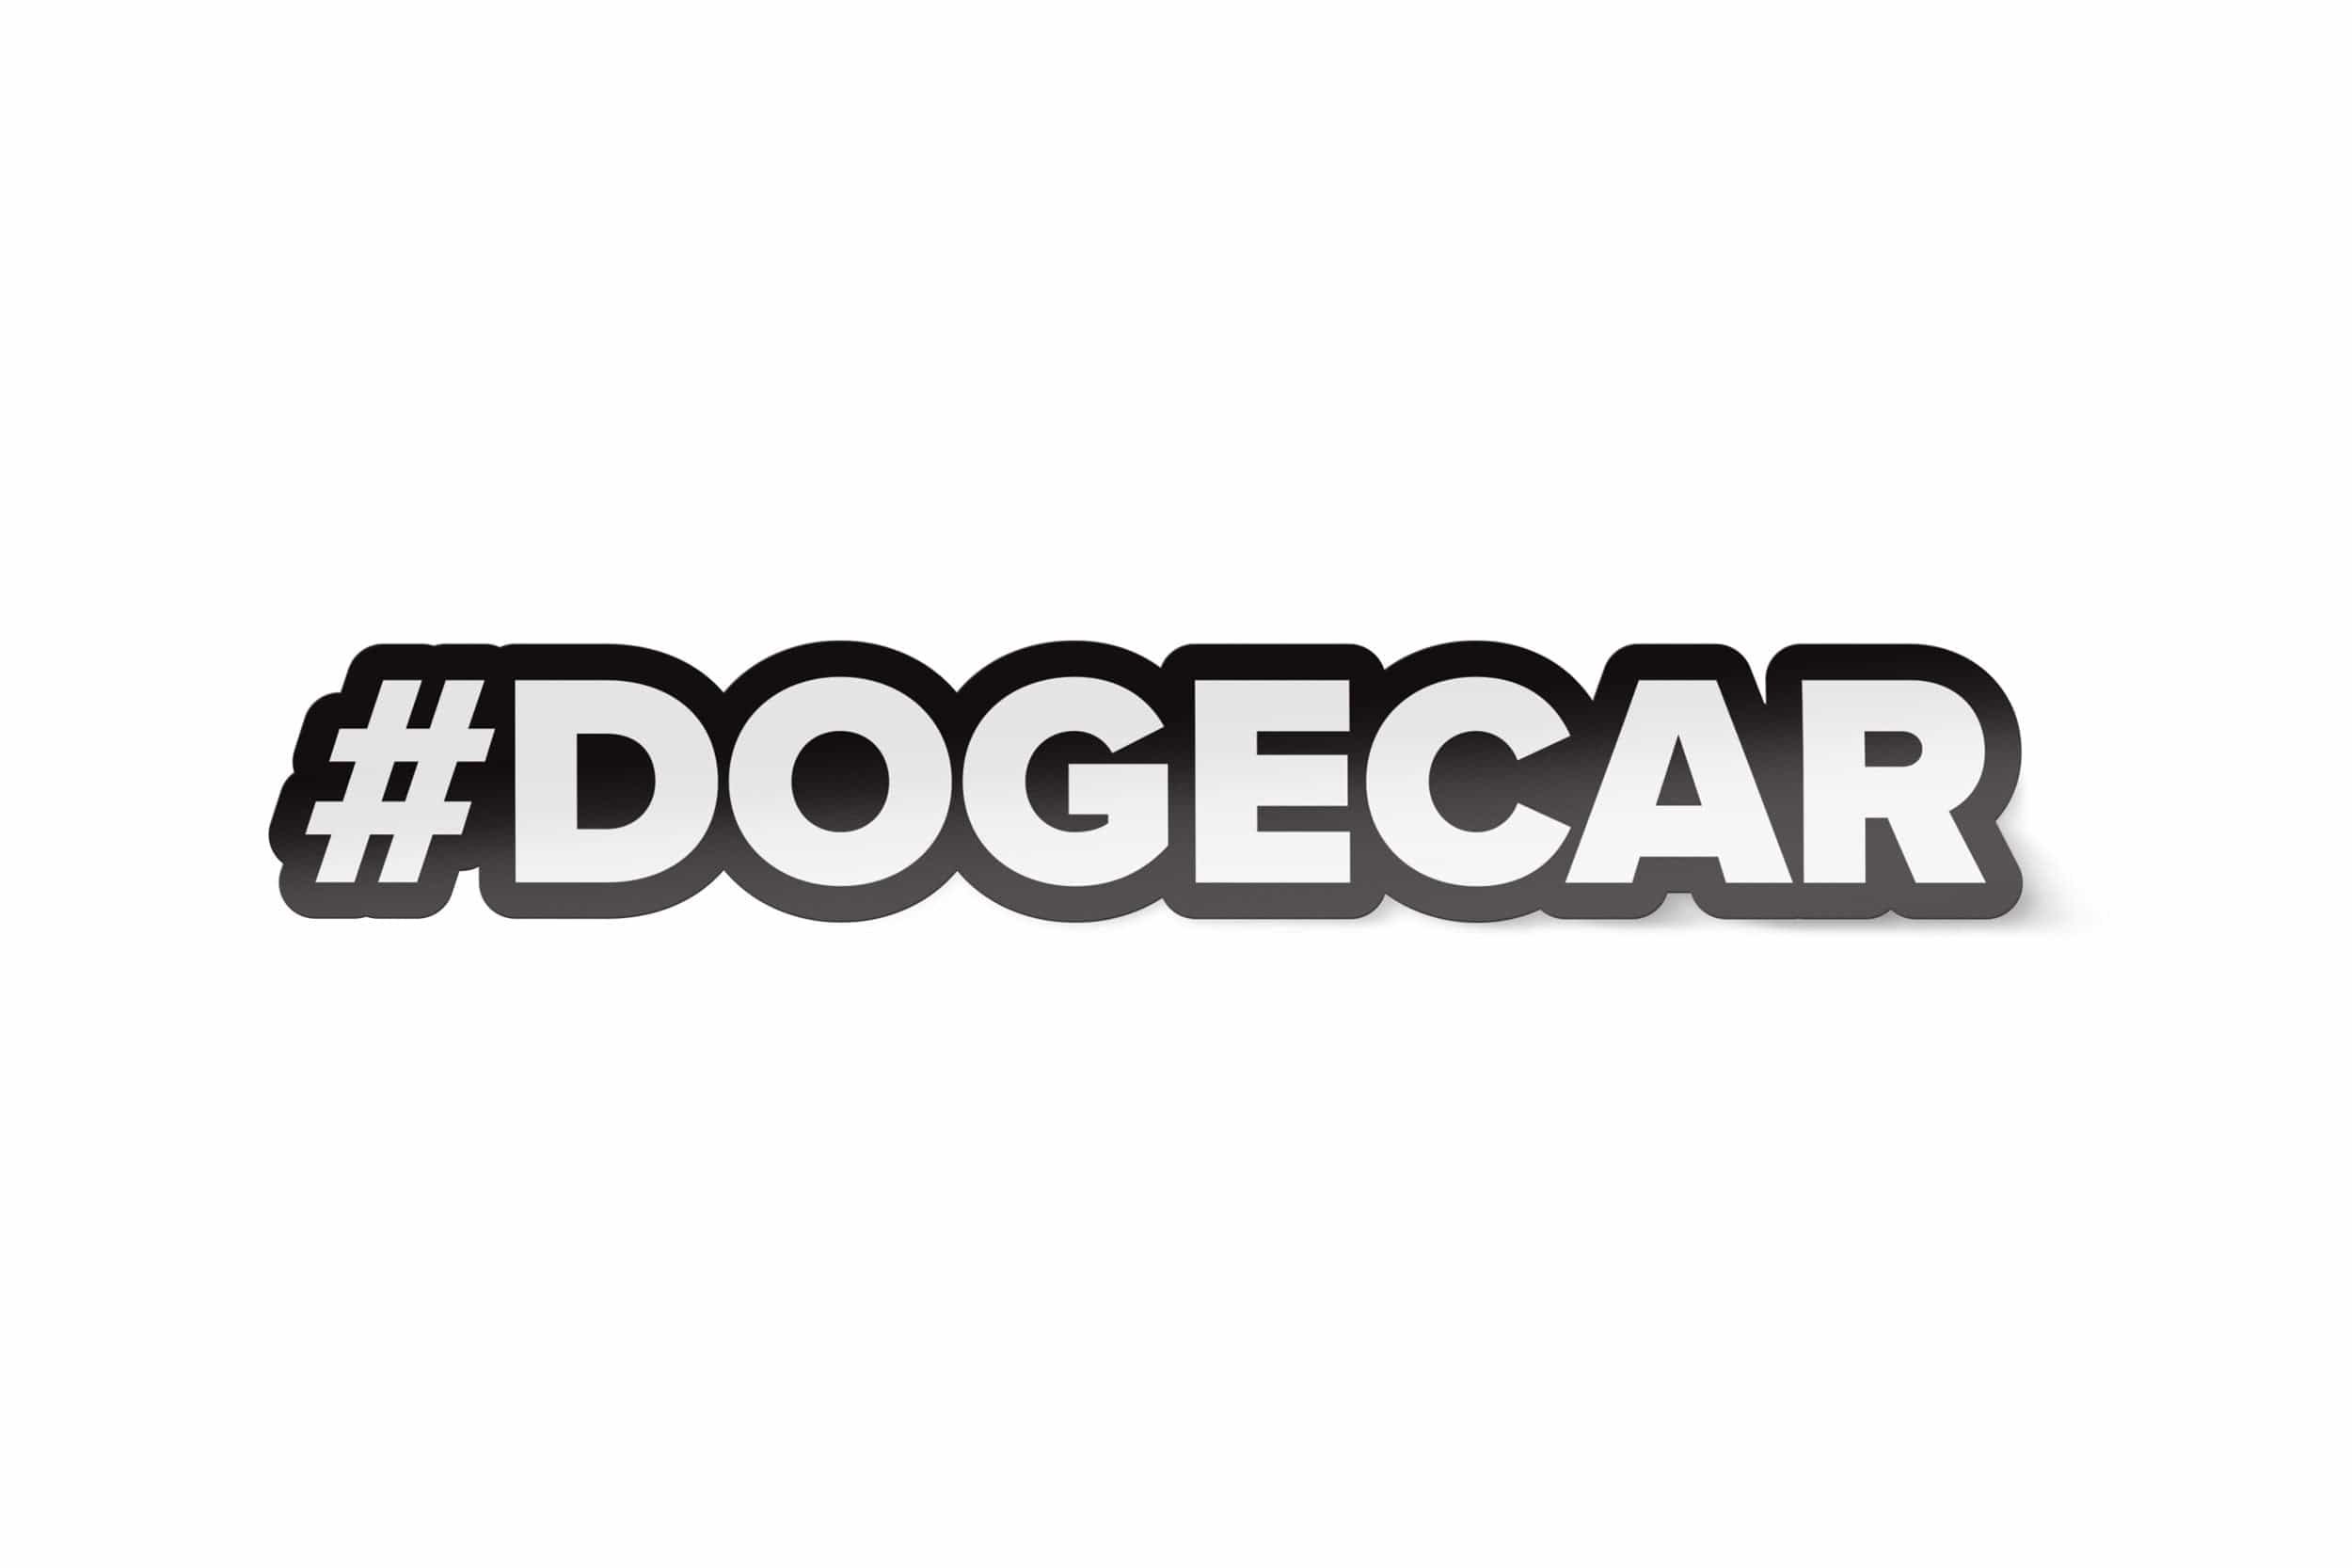 DOGECAR 'Hashtag' Sticker - Black/White DO-ST-02